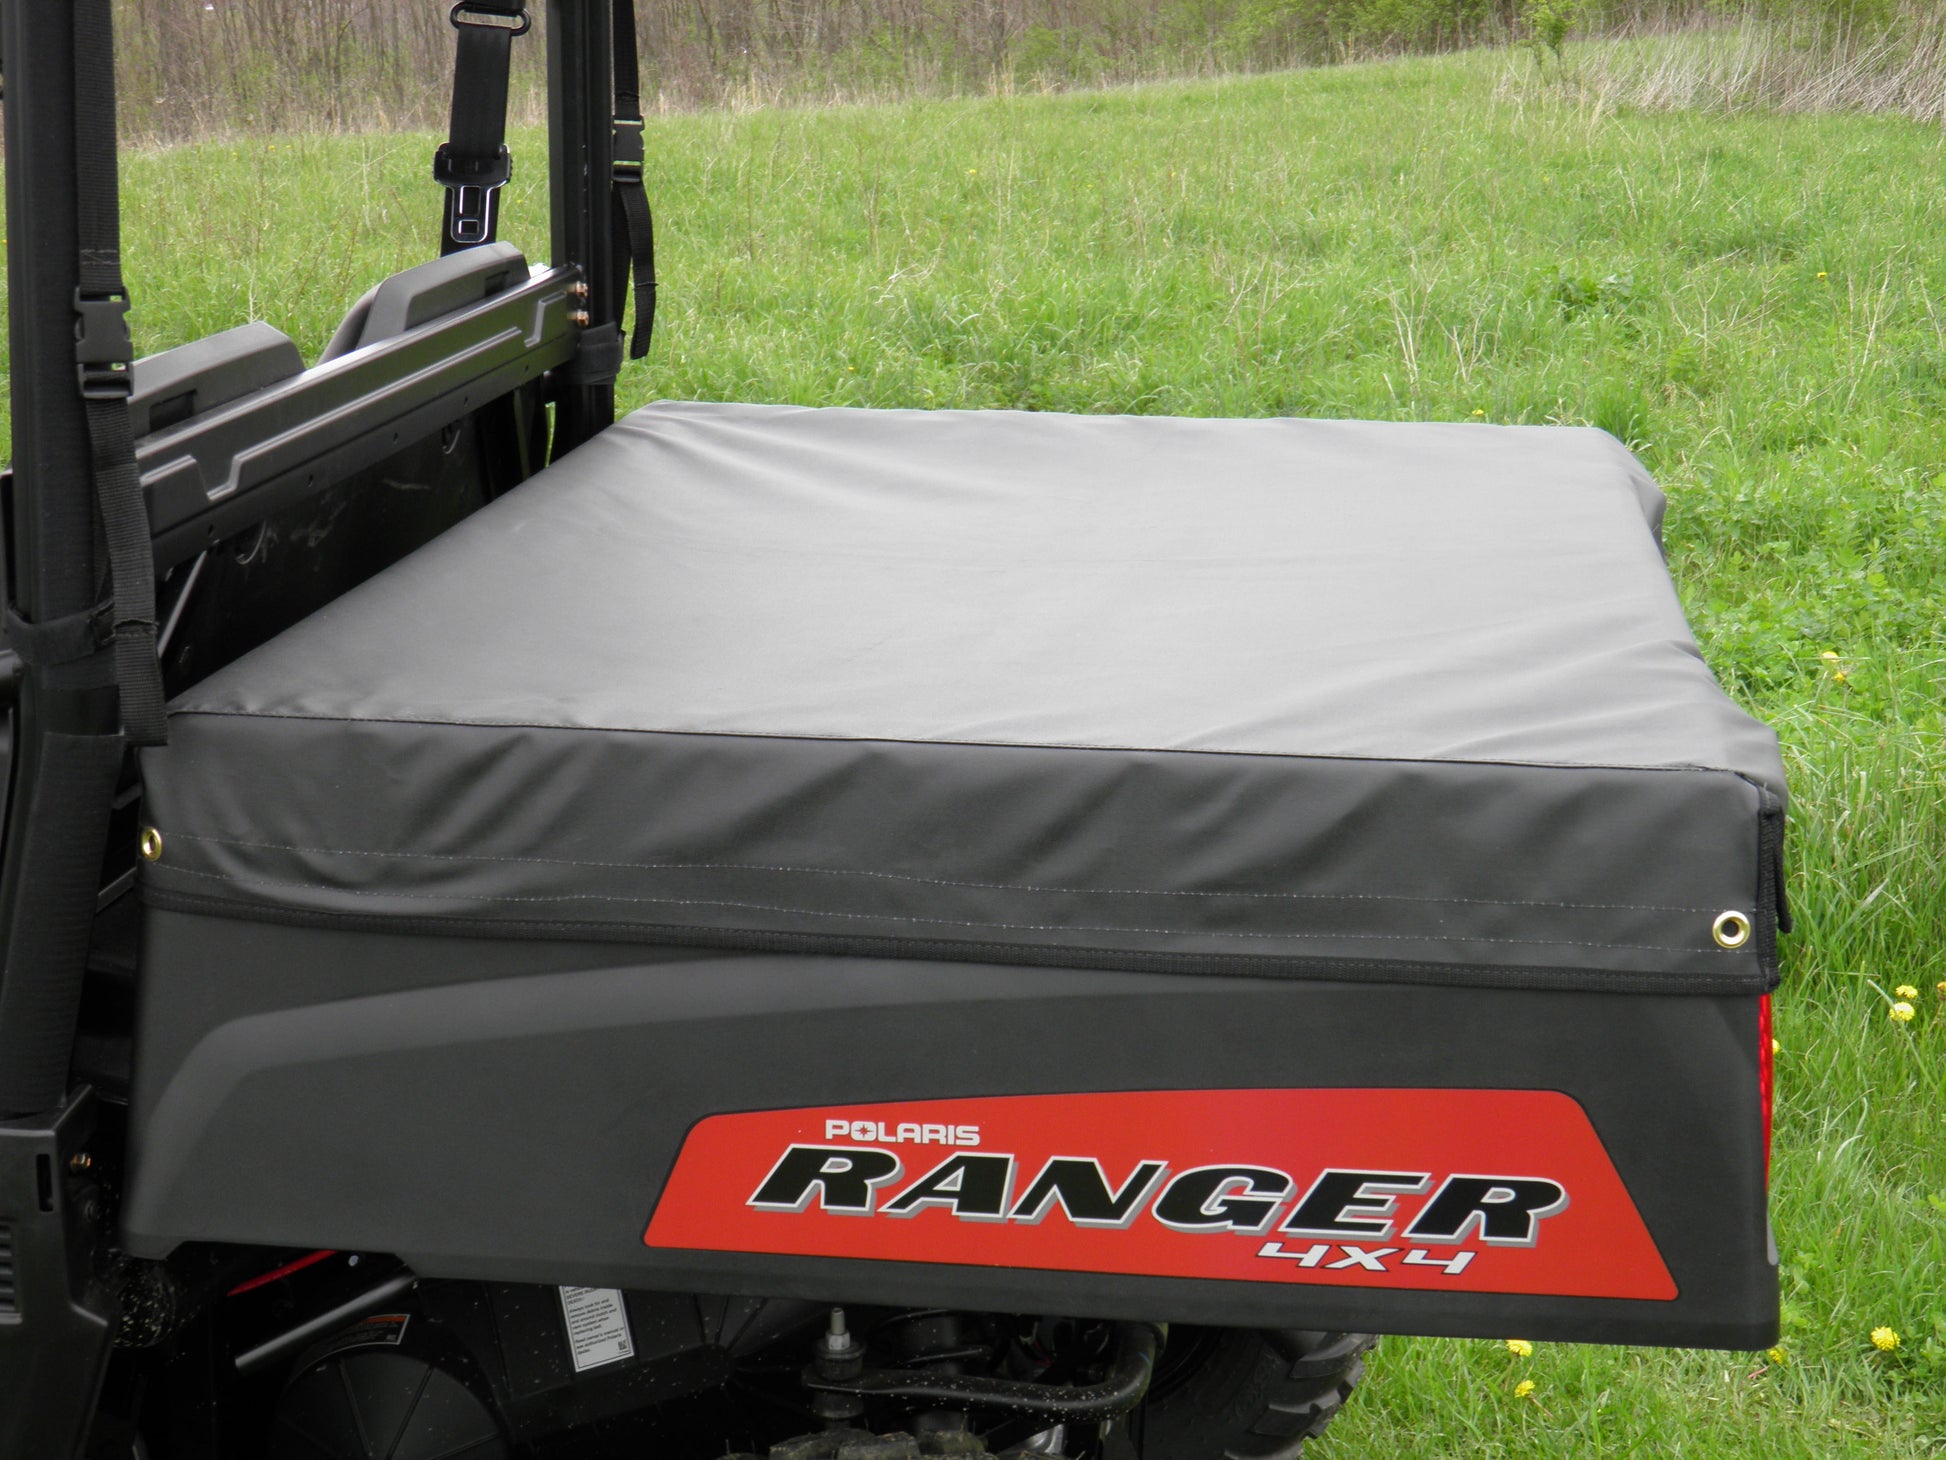 Polaris Mid-Size 570 Ranger 2-Seater - Bed Cover - 3 Star UTV